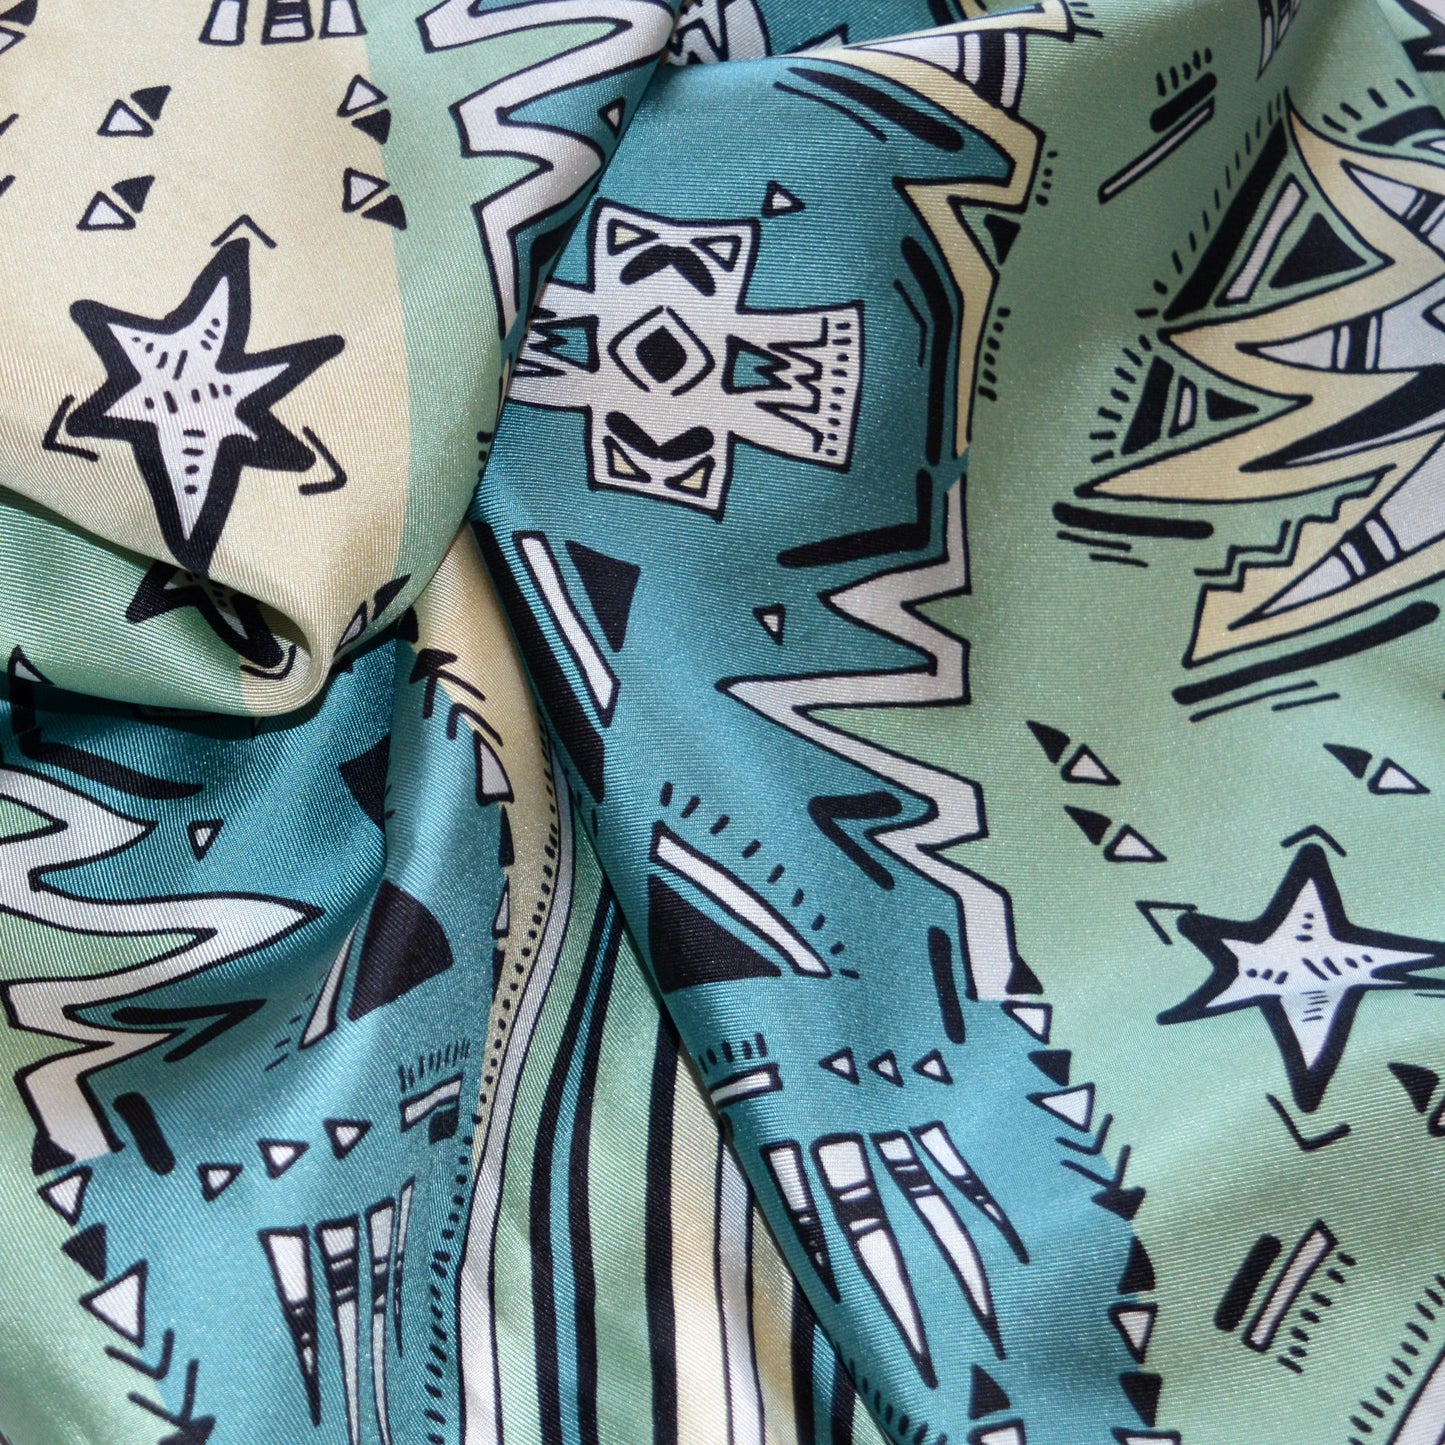 particolare di foulard pregiato con motivi grafici di stelle e righe in palette turchese ottanio avorio beige